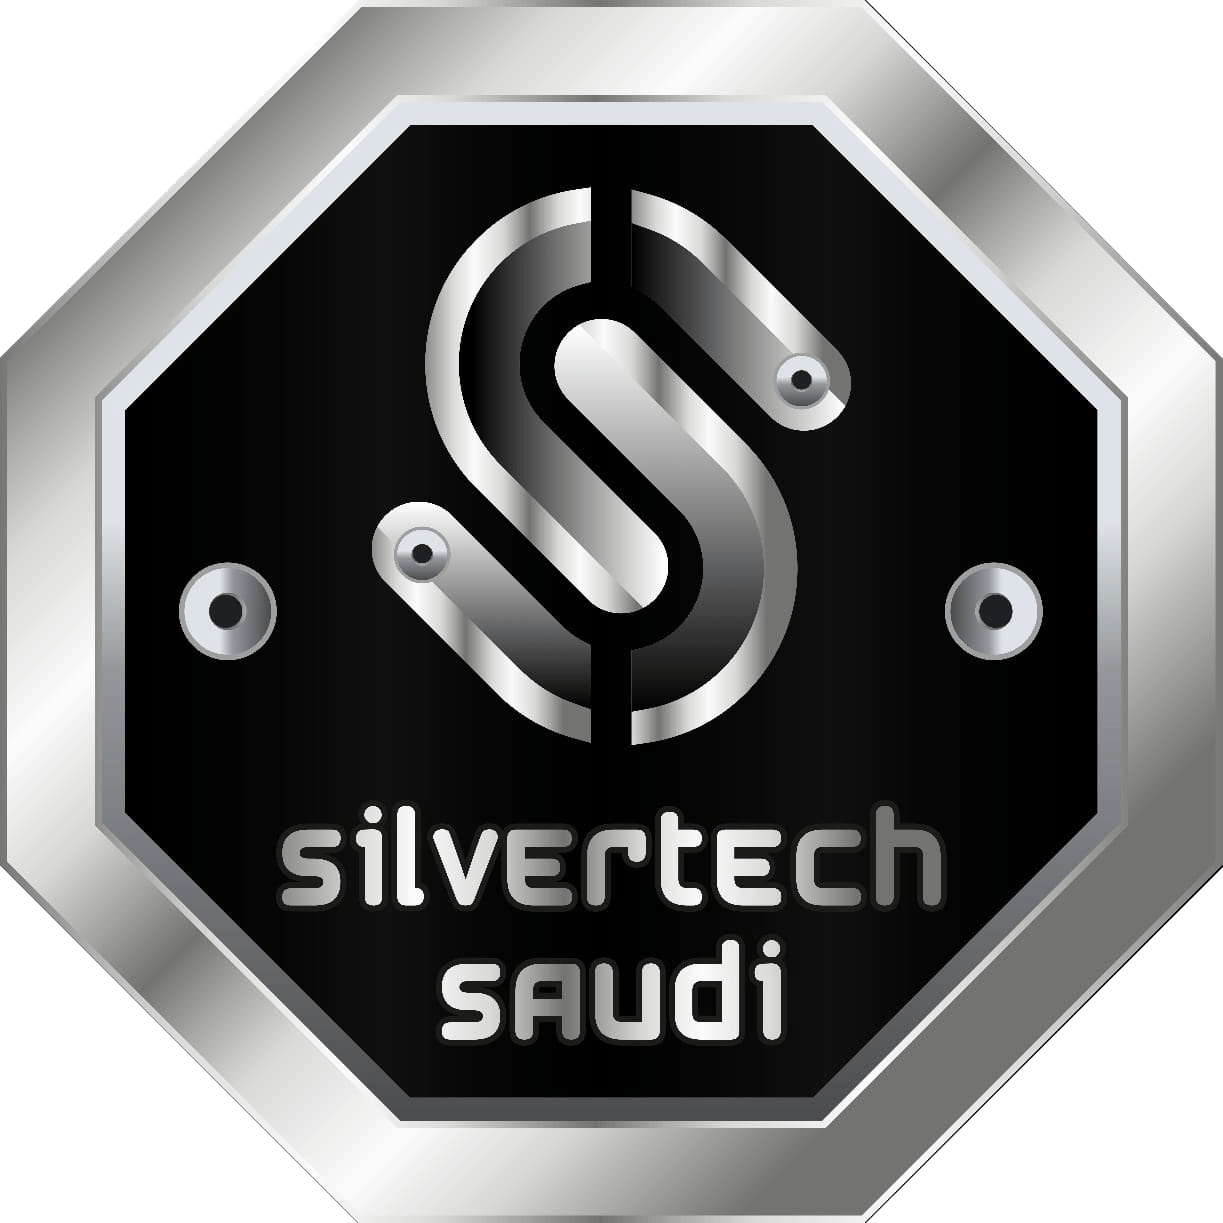 Silvertech Saudi logo